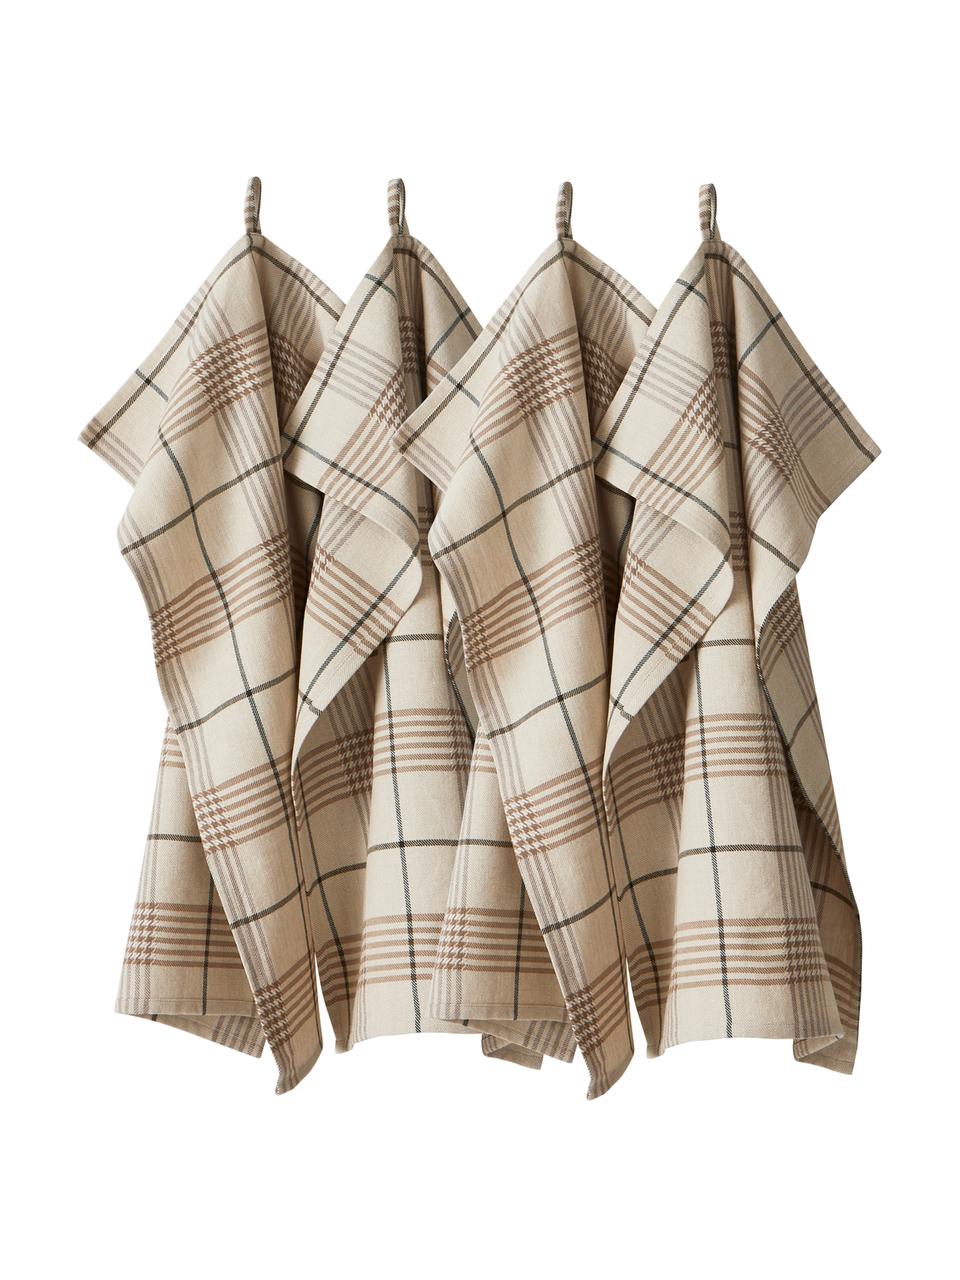 Ręcznik kuchenny Ellery, 4 szt., 100% bawełna pochodząca ze zrównoważonych upraw, Beżowy, odcienie brązowego, S 50 x D 70 cm